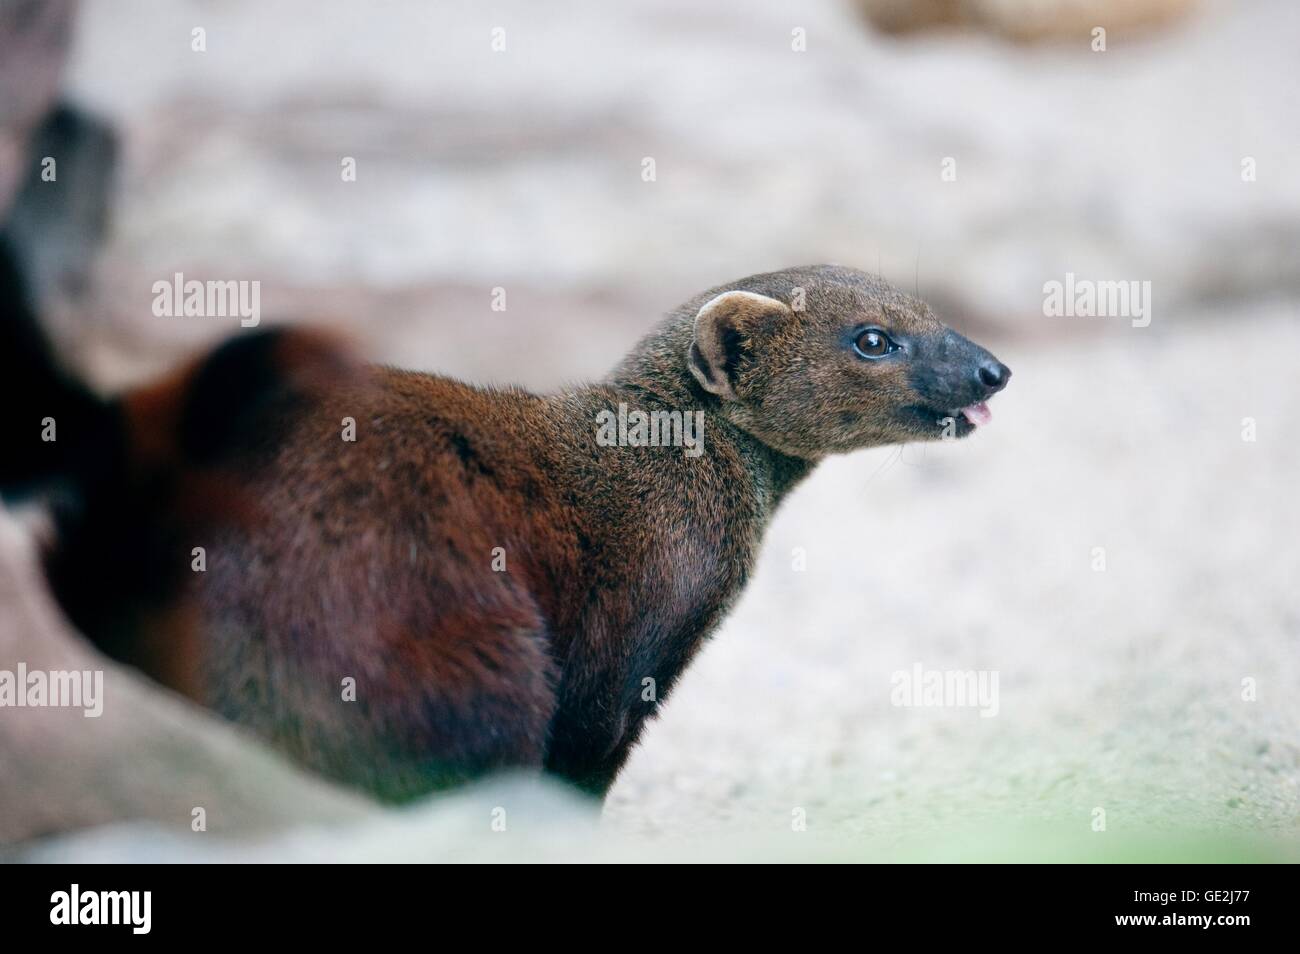 common grey mongoose Stock Photo